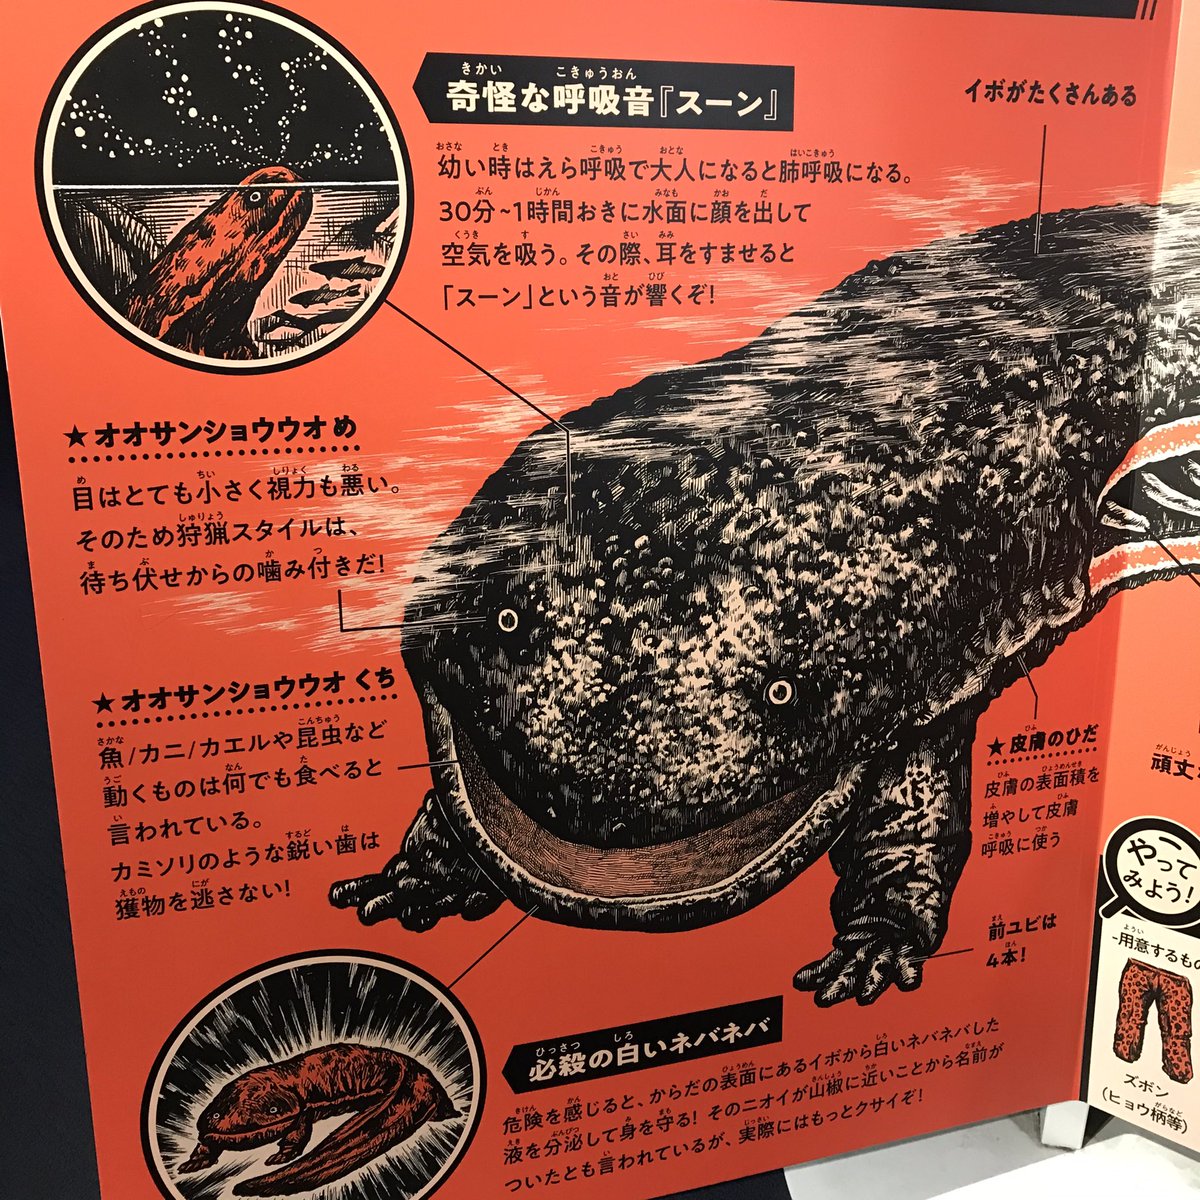 京都水族館のオオサンショウウオ 解説パネルが完全に 昭和の怪獣図鑑 でテンション爆上げ これだけで行く価値ある Togetter